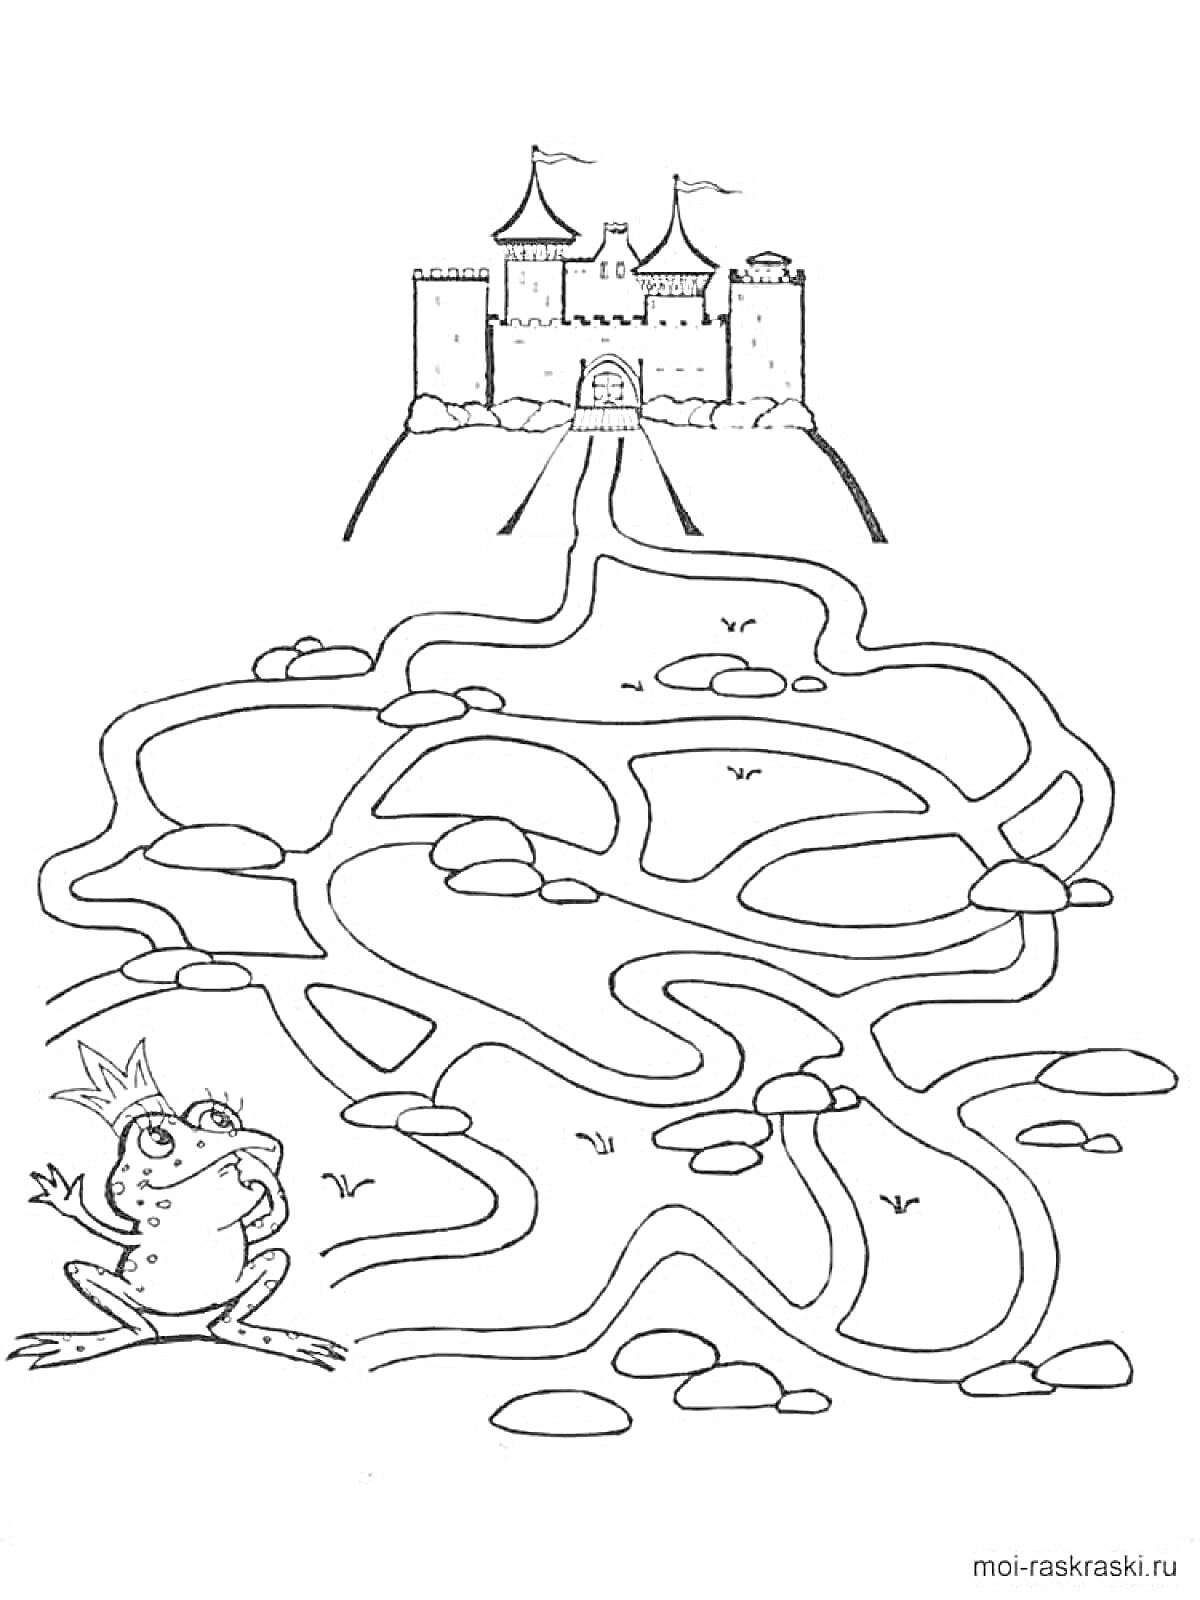 Раскраска Лабиринт с лягушкой и замком